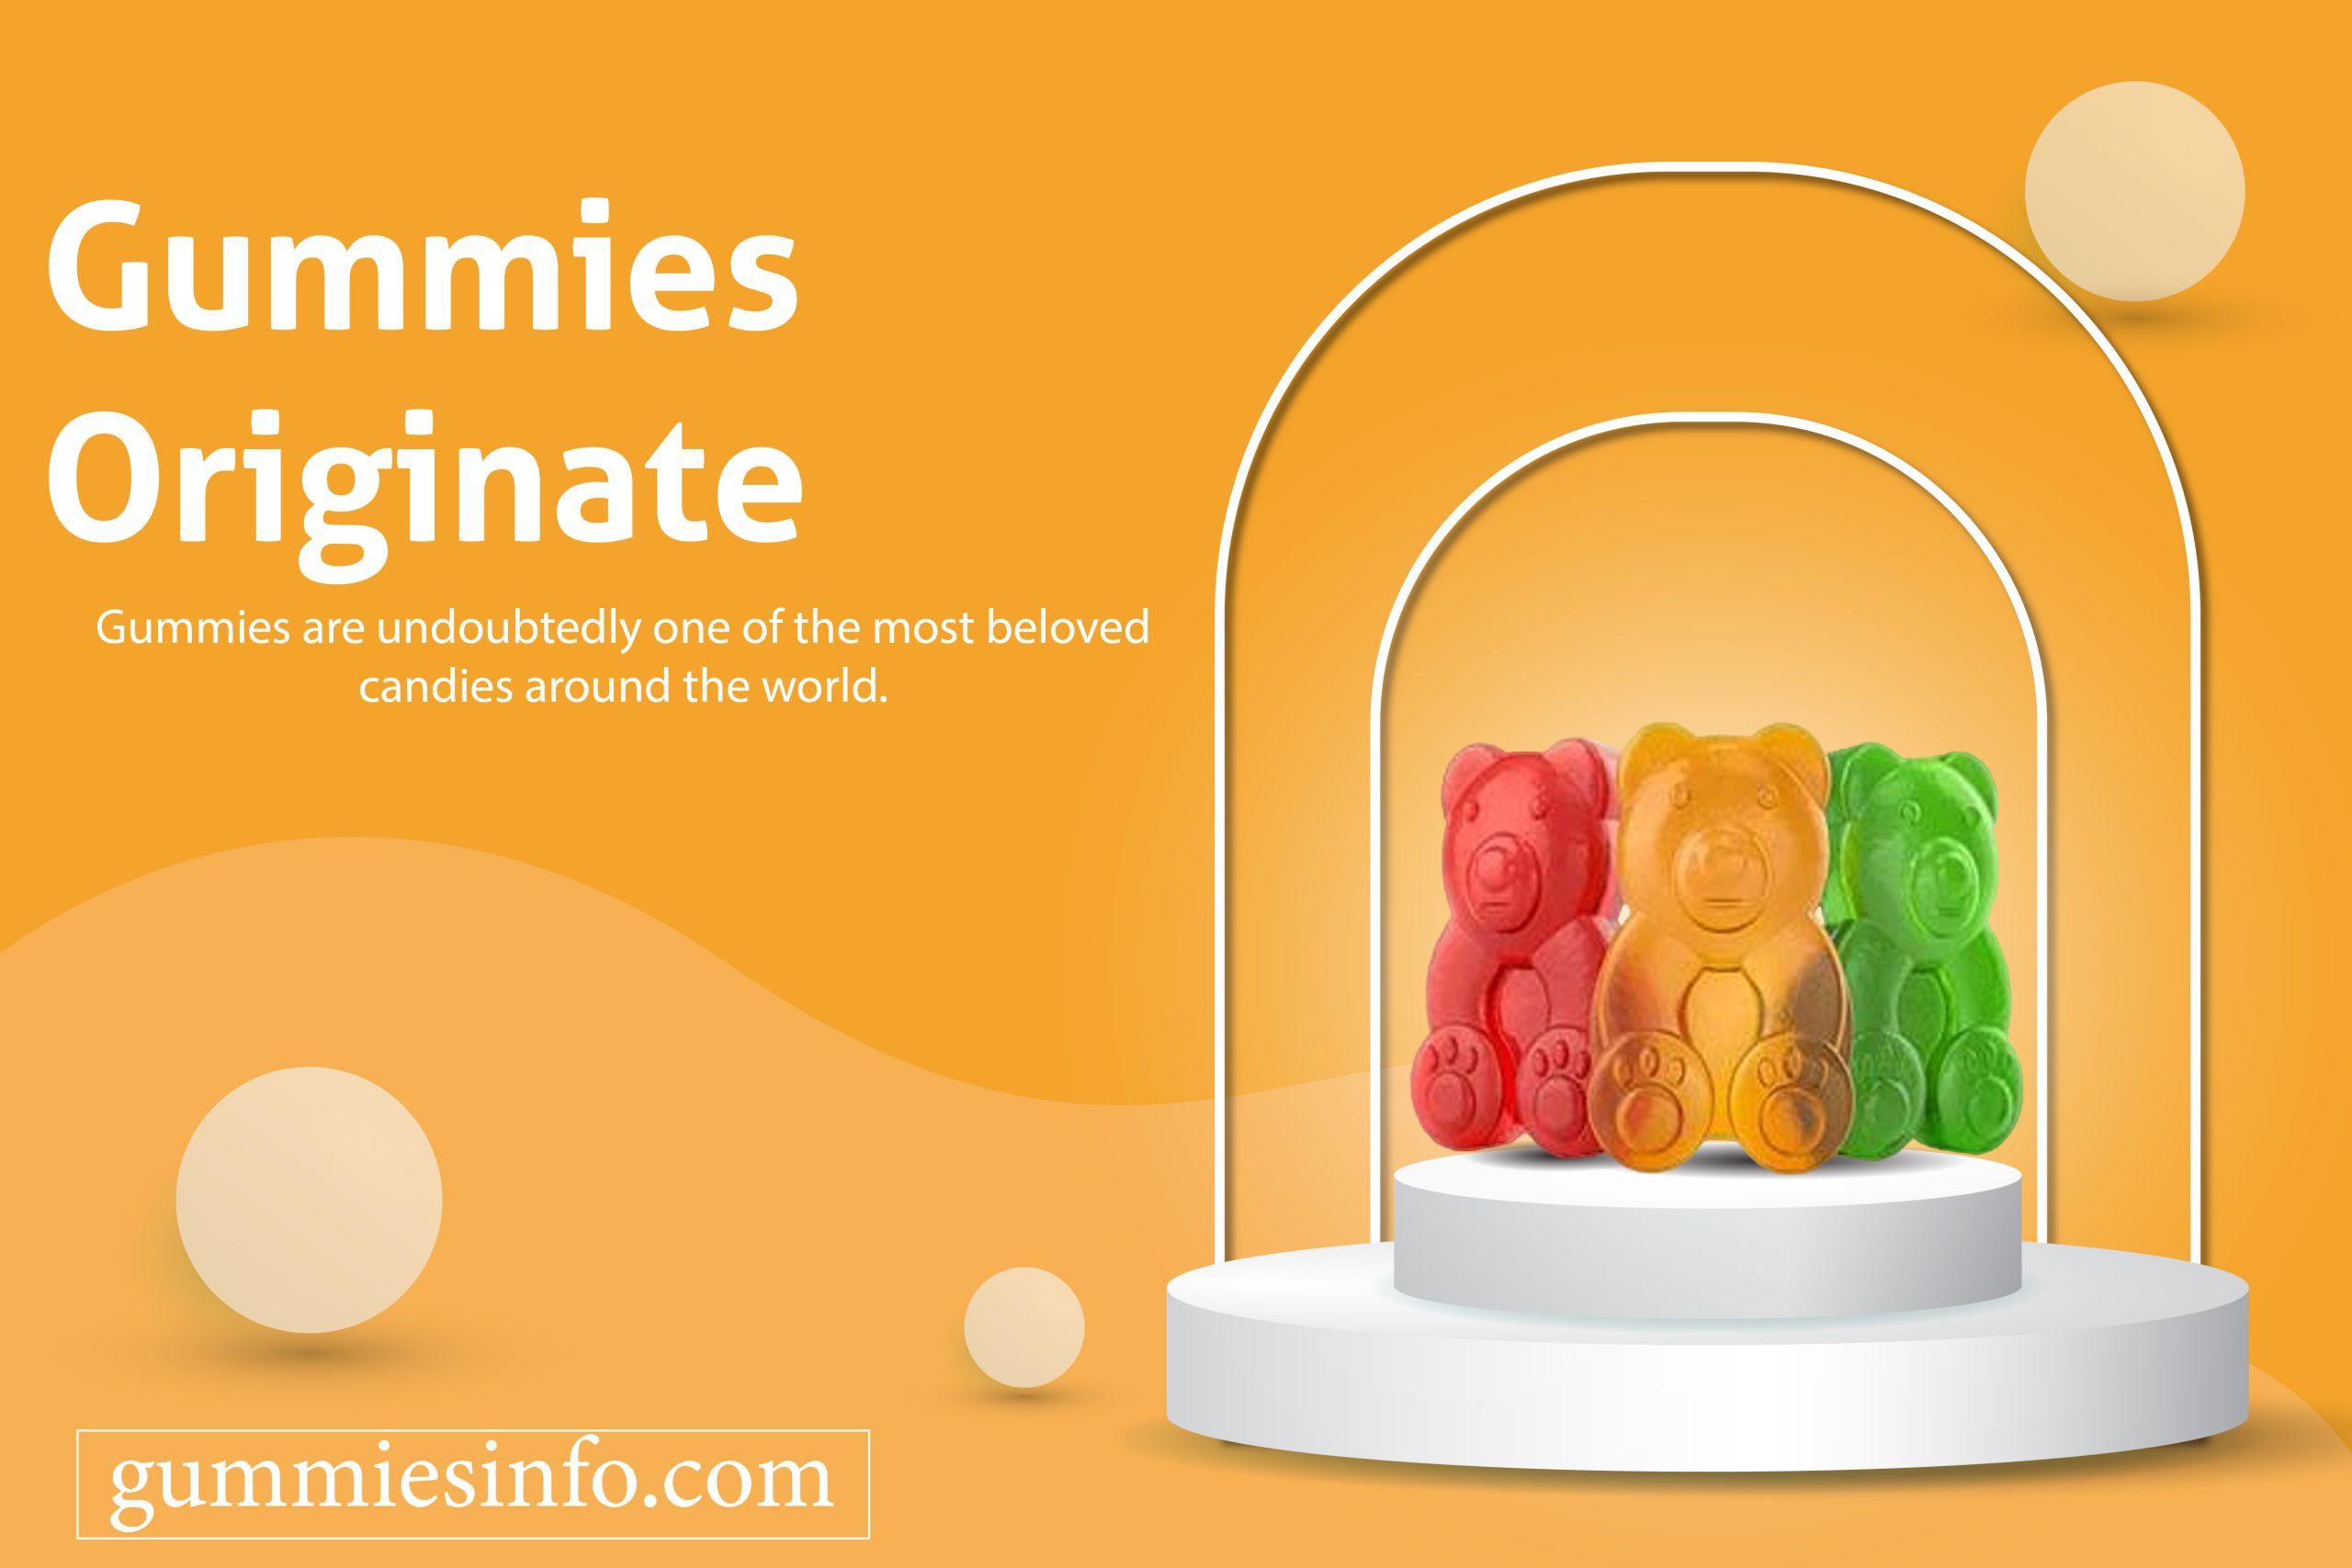 Gummies Originate